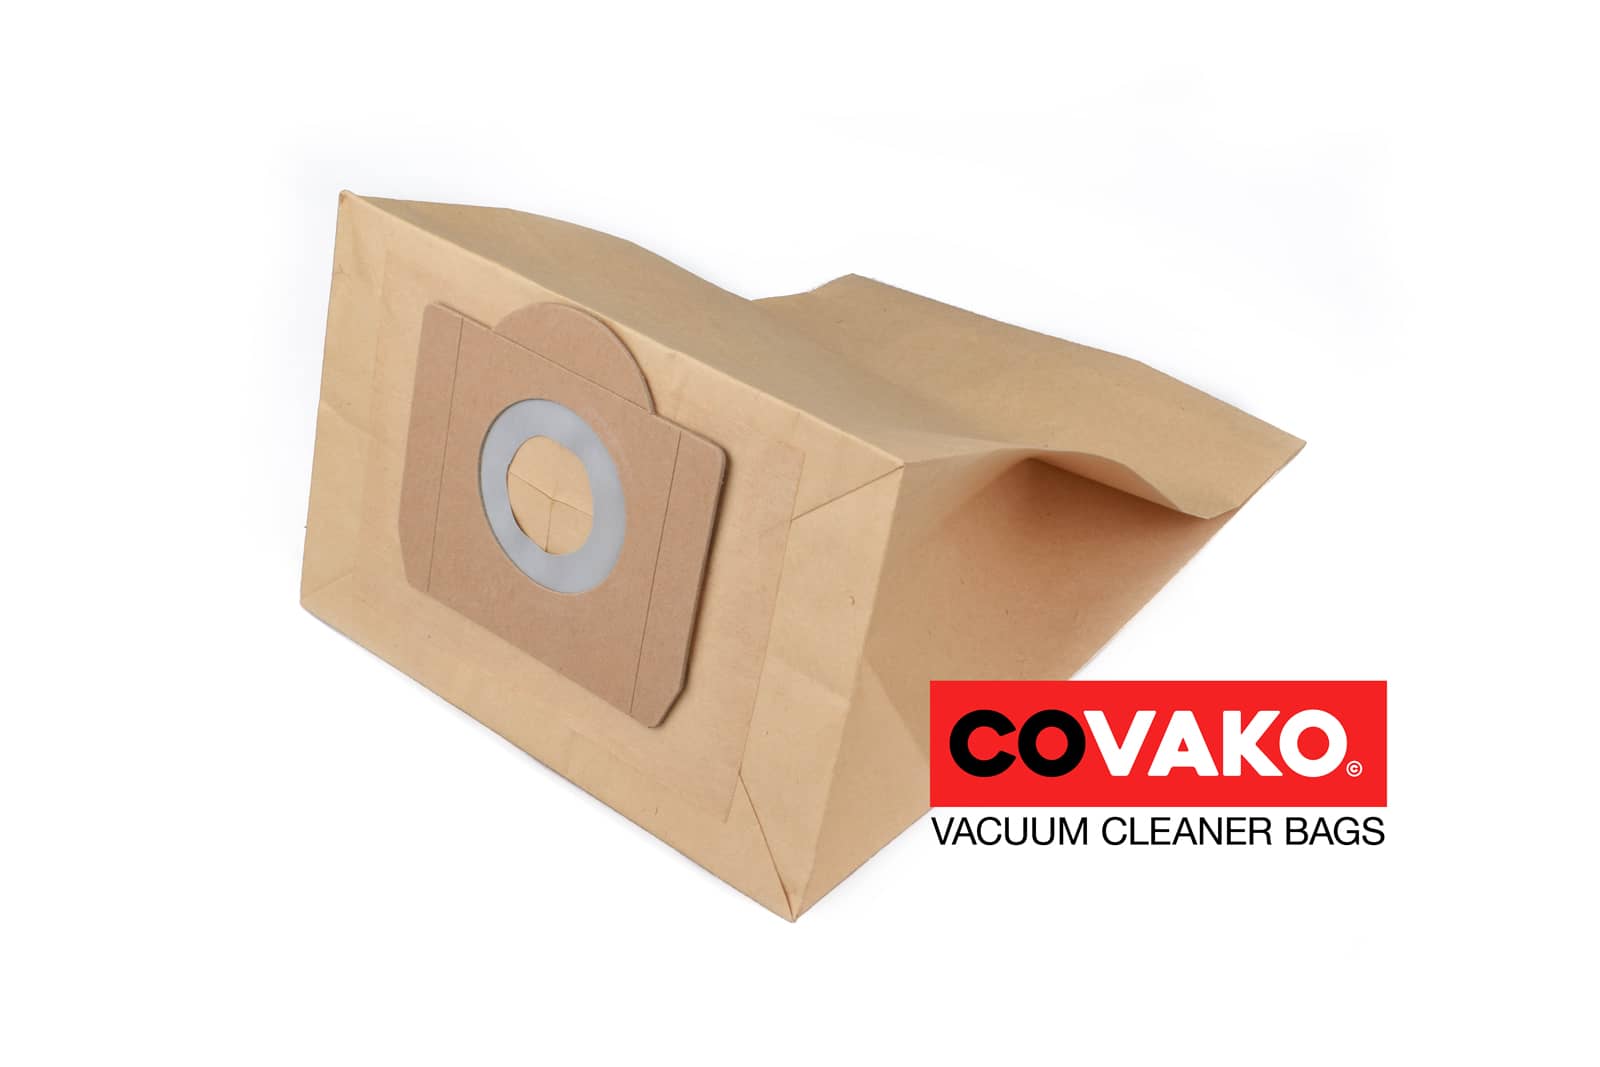 Soteco Free Steel 215 / Paper - Soteco vacuum cleaner bags